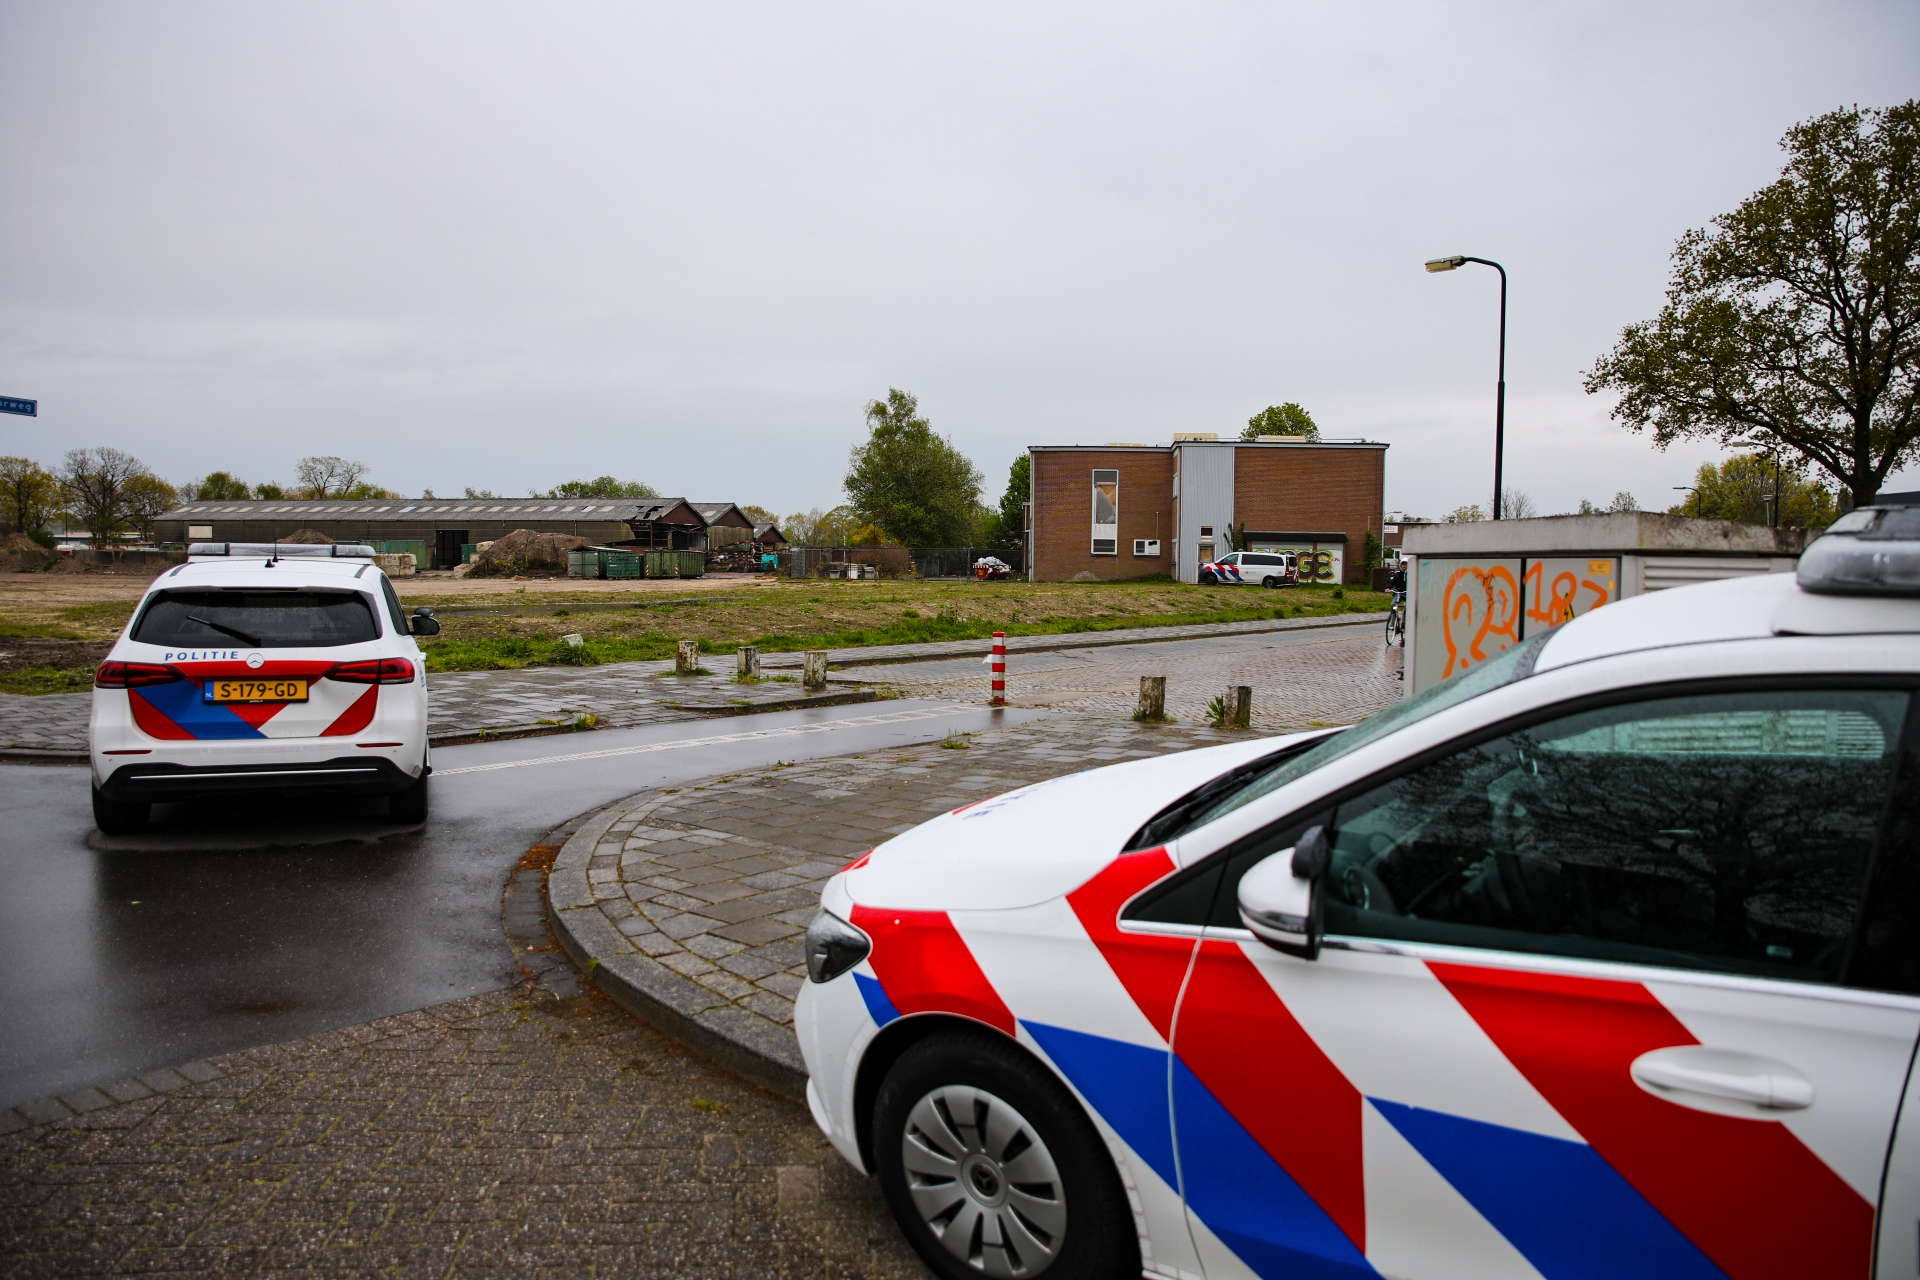 Politie omsingeld bedrijfspand in Apeldoorn na melding verdachte situatie